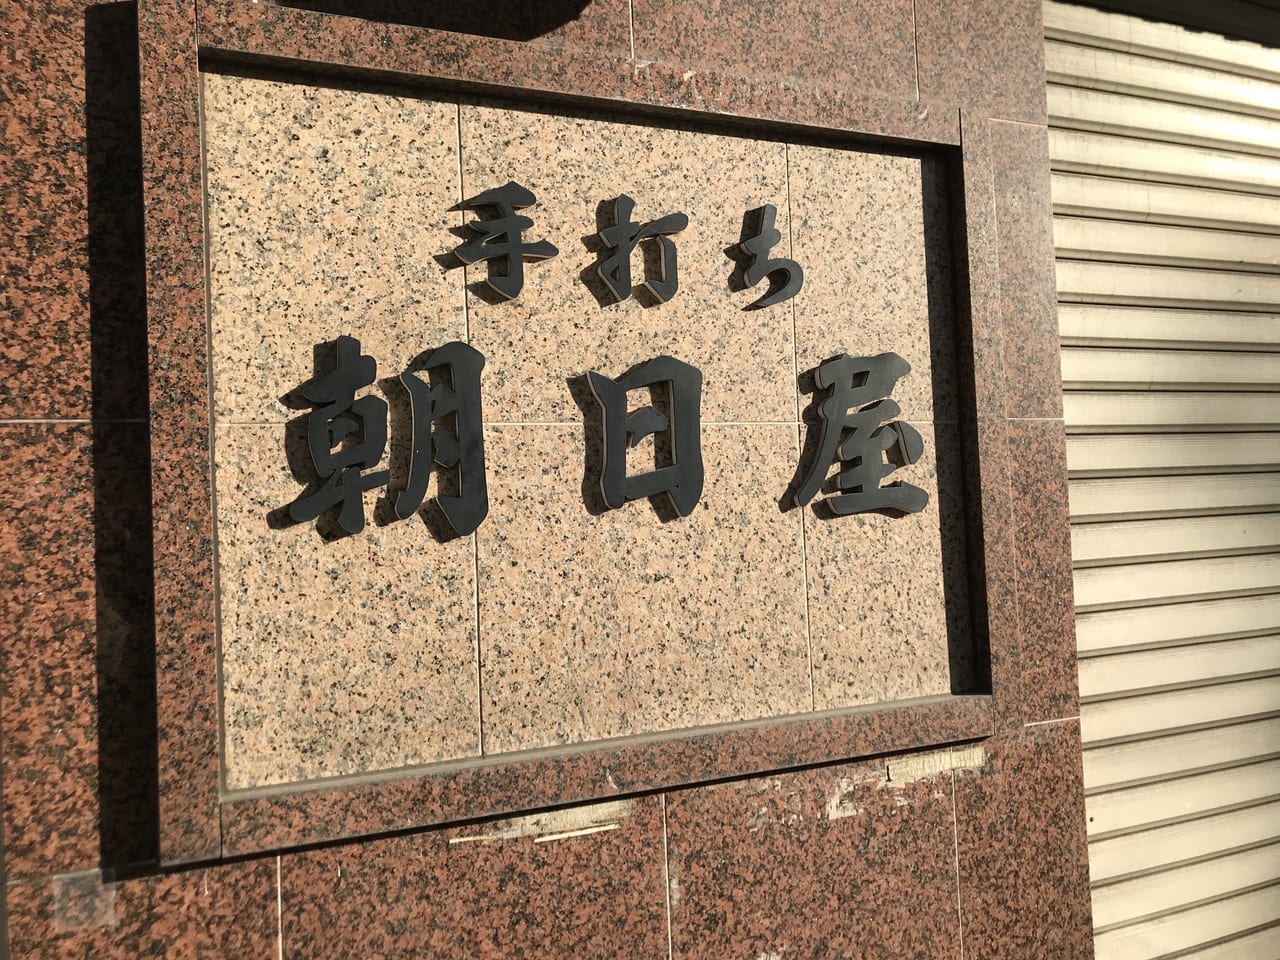 世田谷区駒沢手打ちそば朝日屋が60年の歴史に幕を下ろし2021年10月28日に閉店してしまいました。